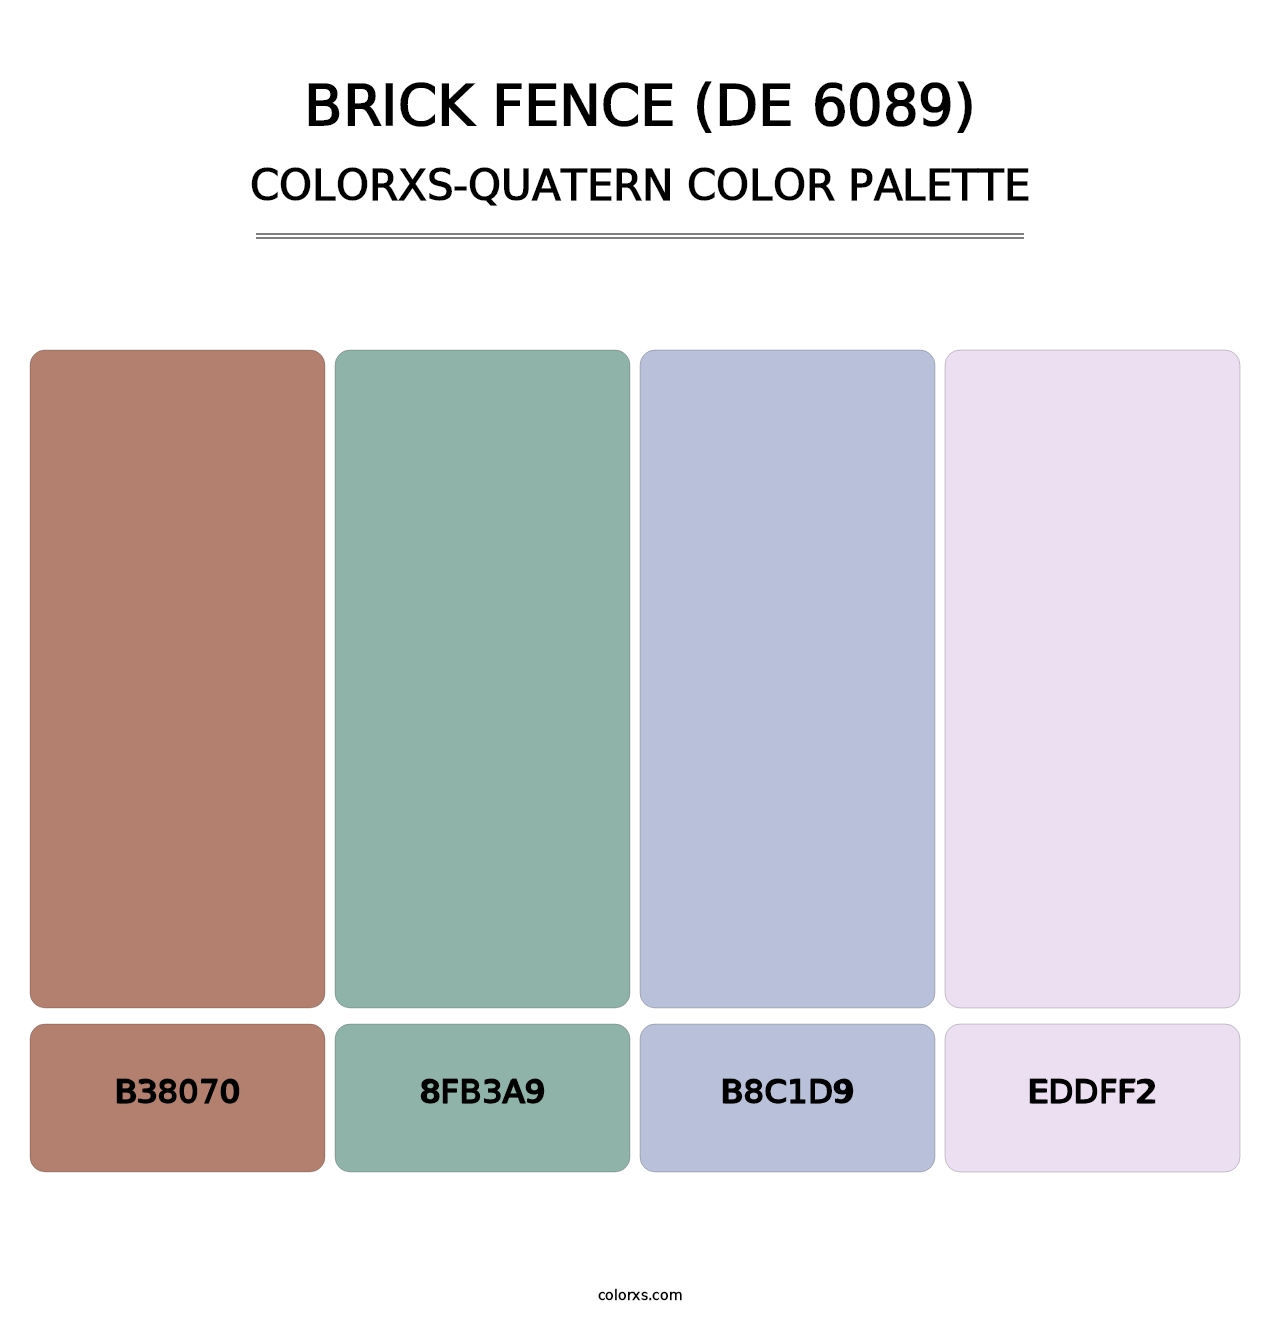 Brick Fence (DE 6089) - Colorxs Quatern Palette